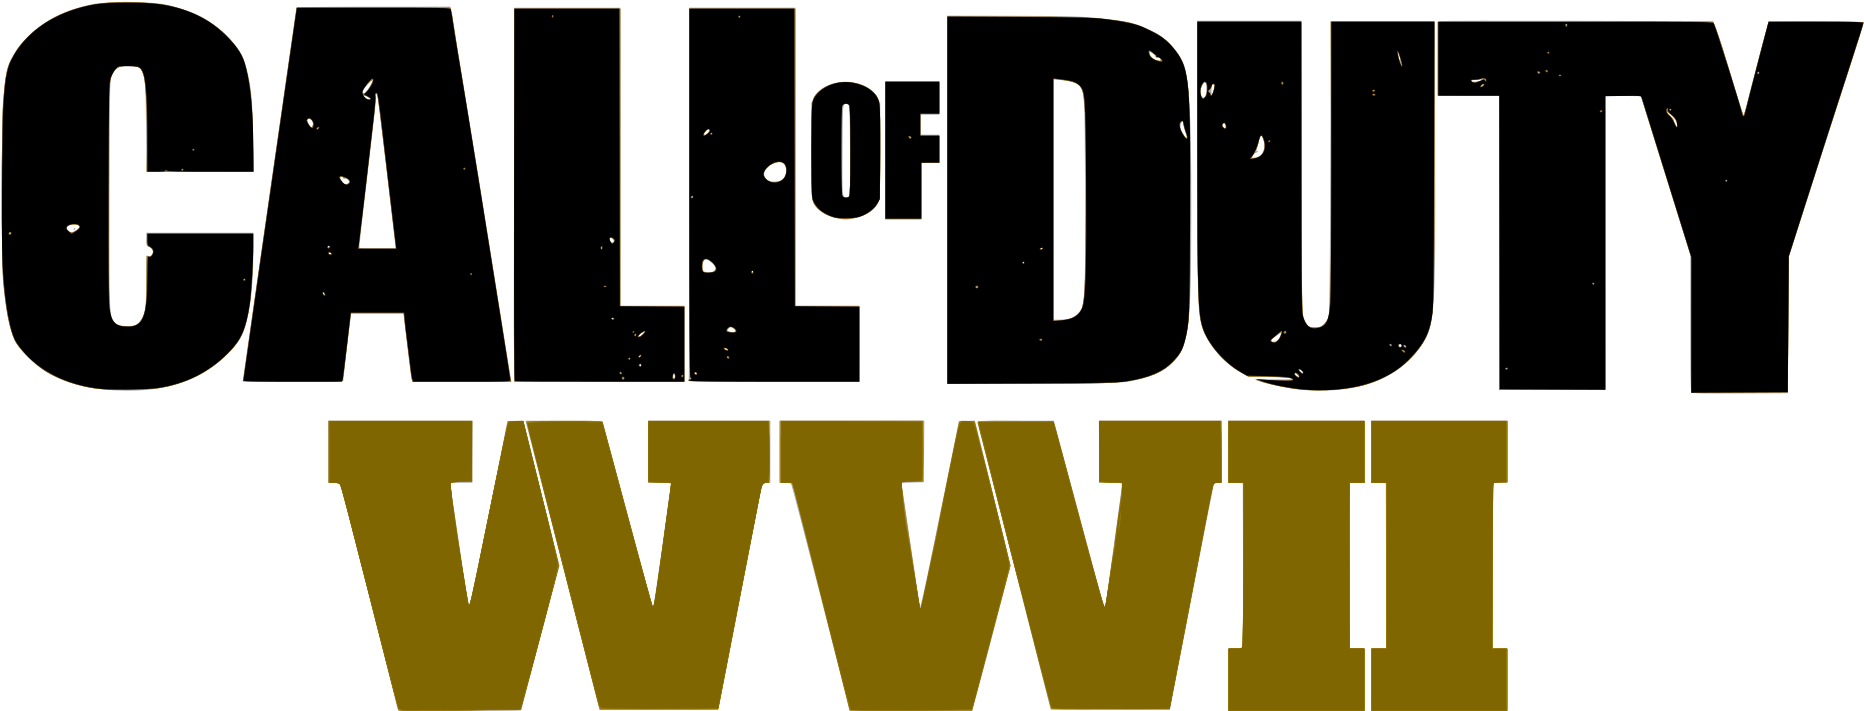 Callof Duty W W I I Logo PNG